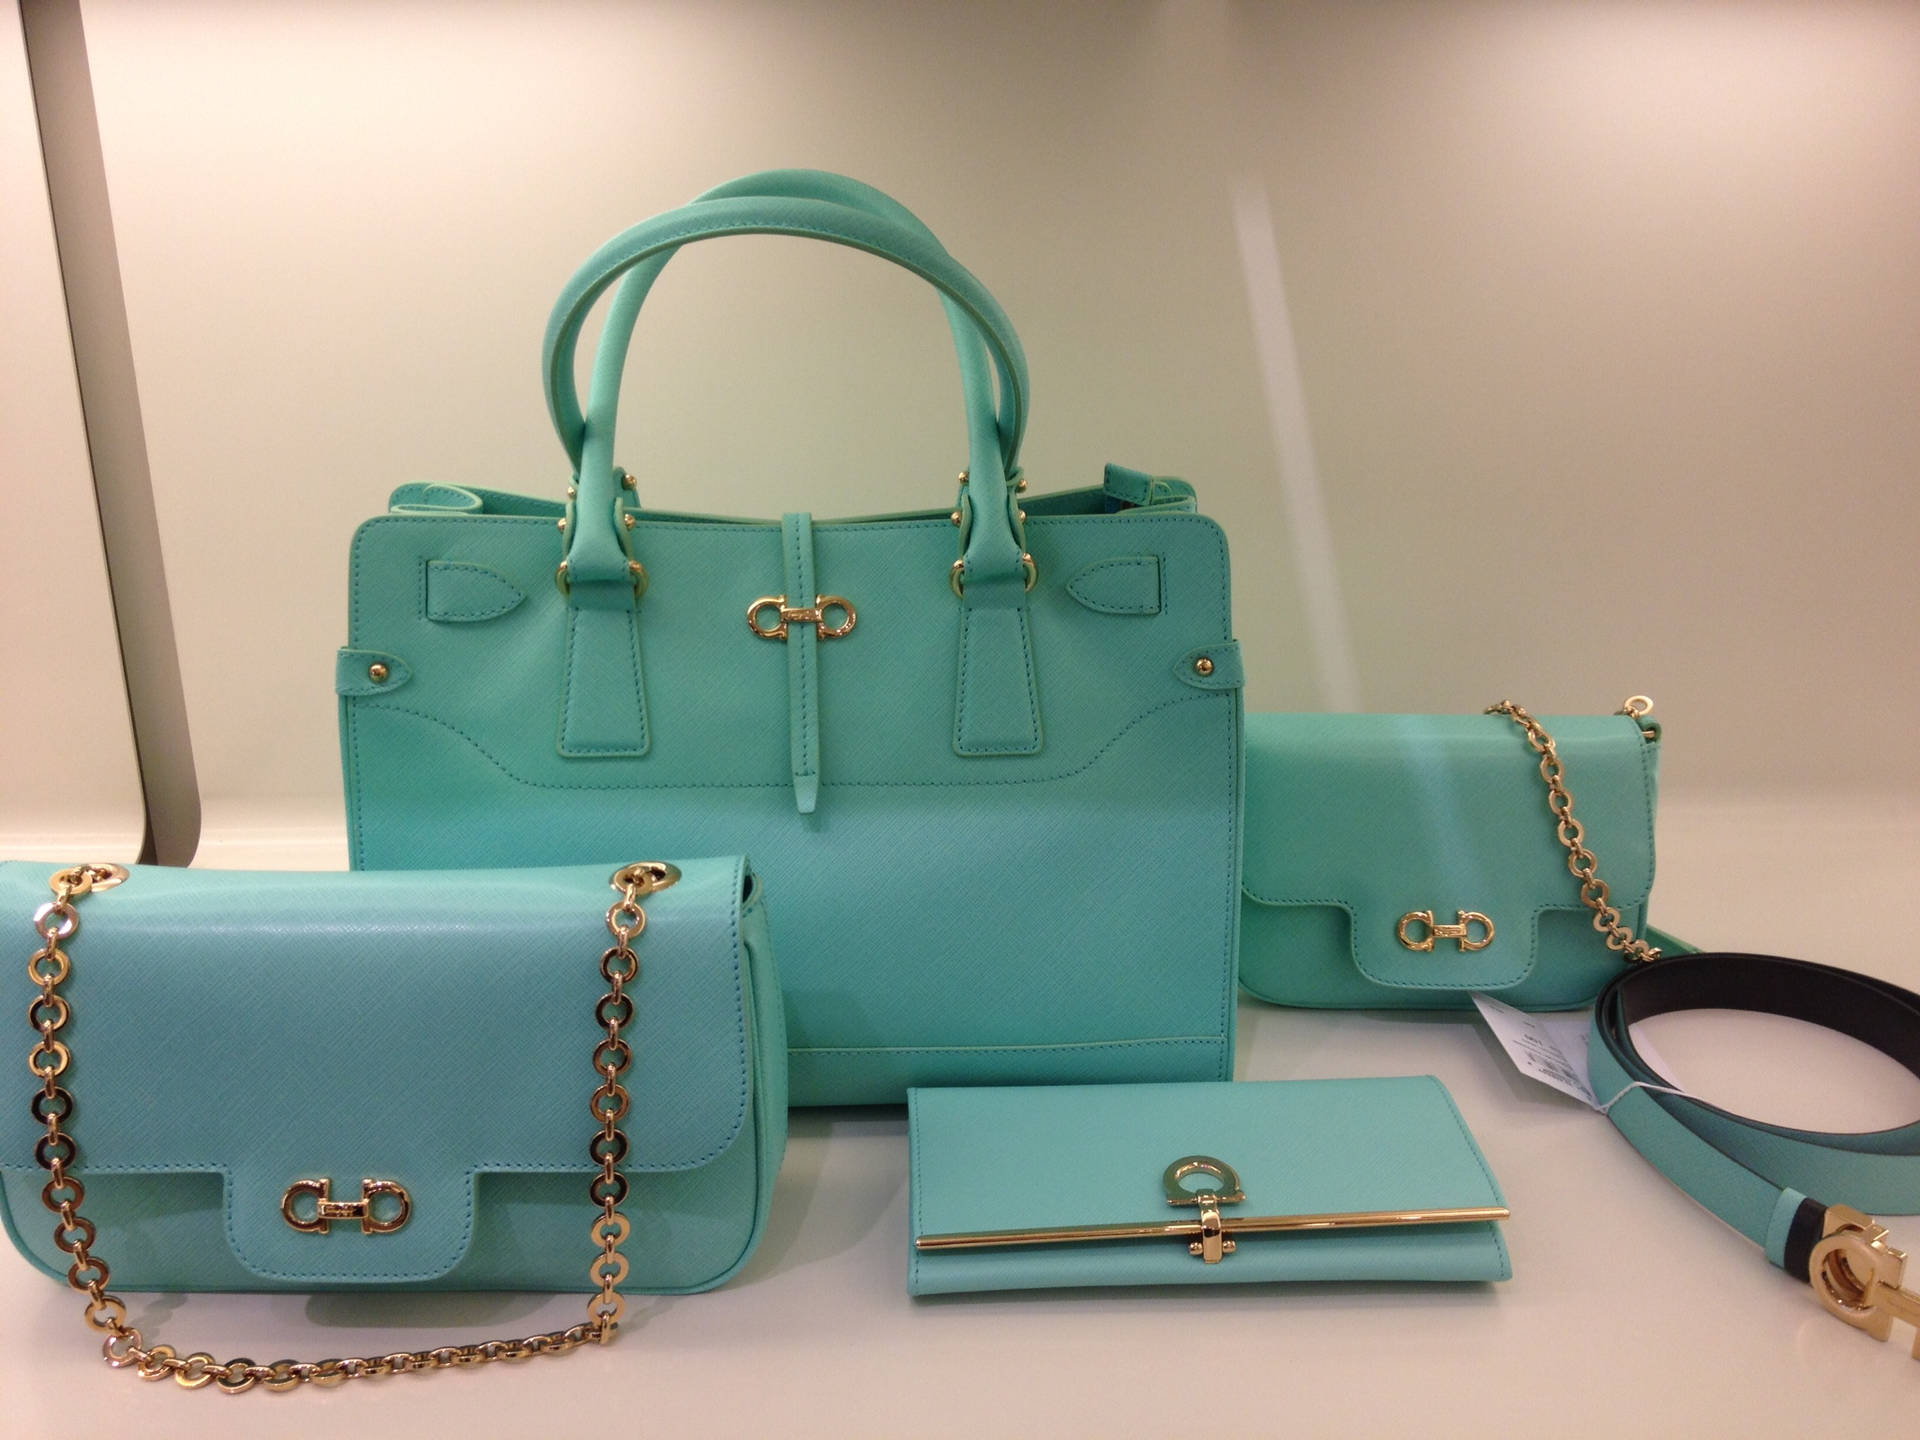 Salvatore Ferragamo Turquoise Bag Set Showcasing Elegance And Luxury